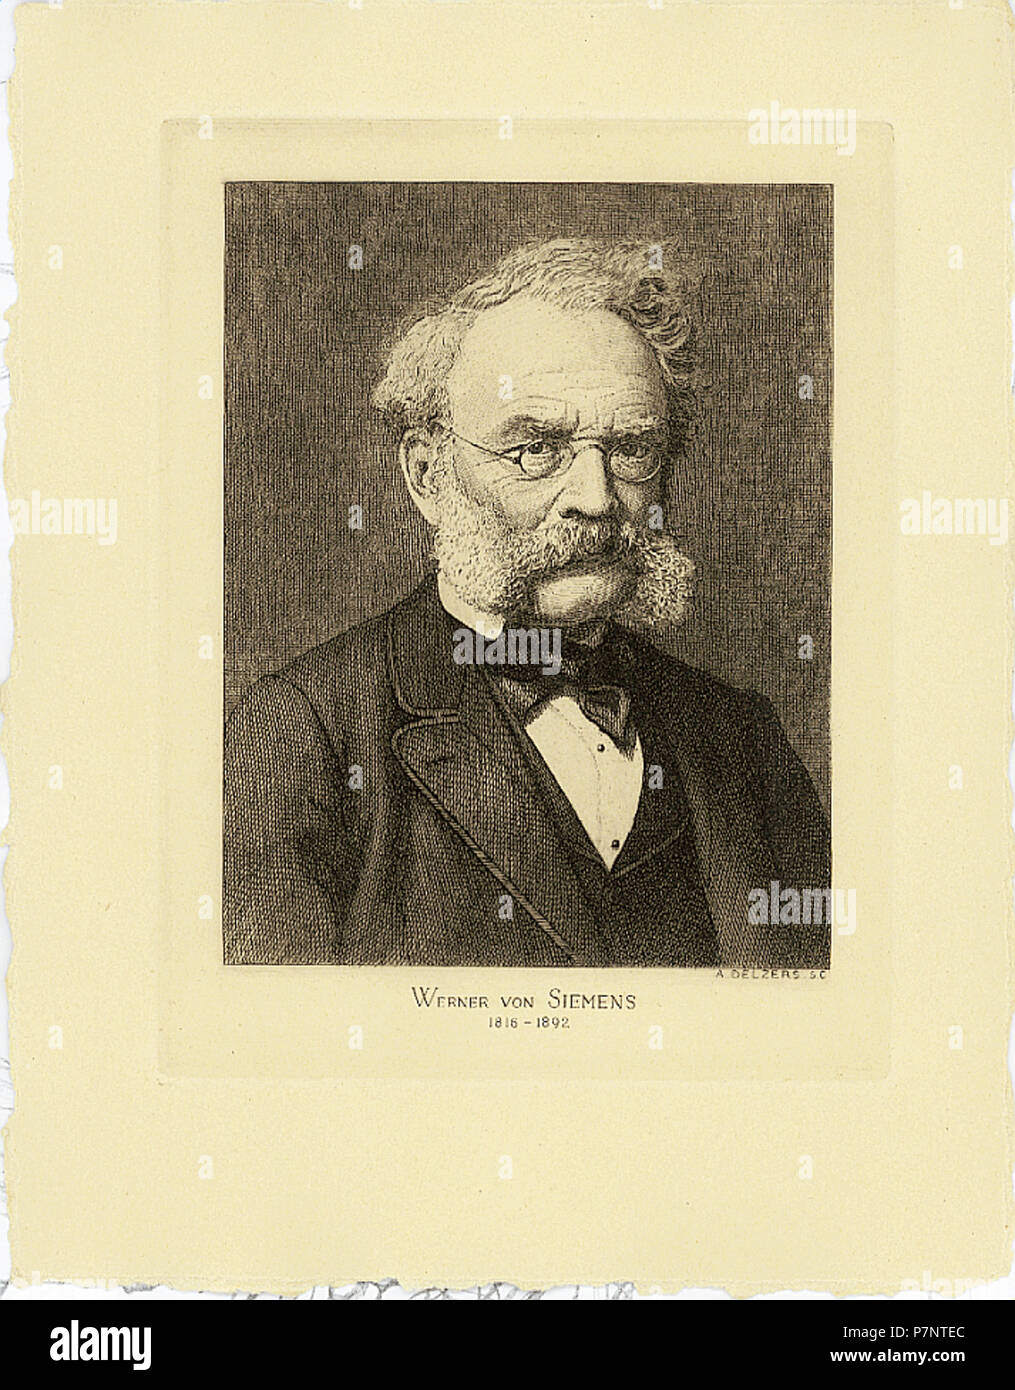 150 ETH-BIB-Siemens, Werner von (1816-1892)-Portrait-Portr 00942 Foto de stock